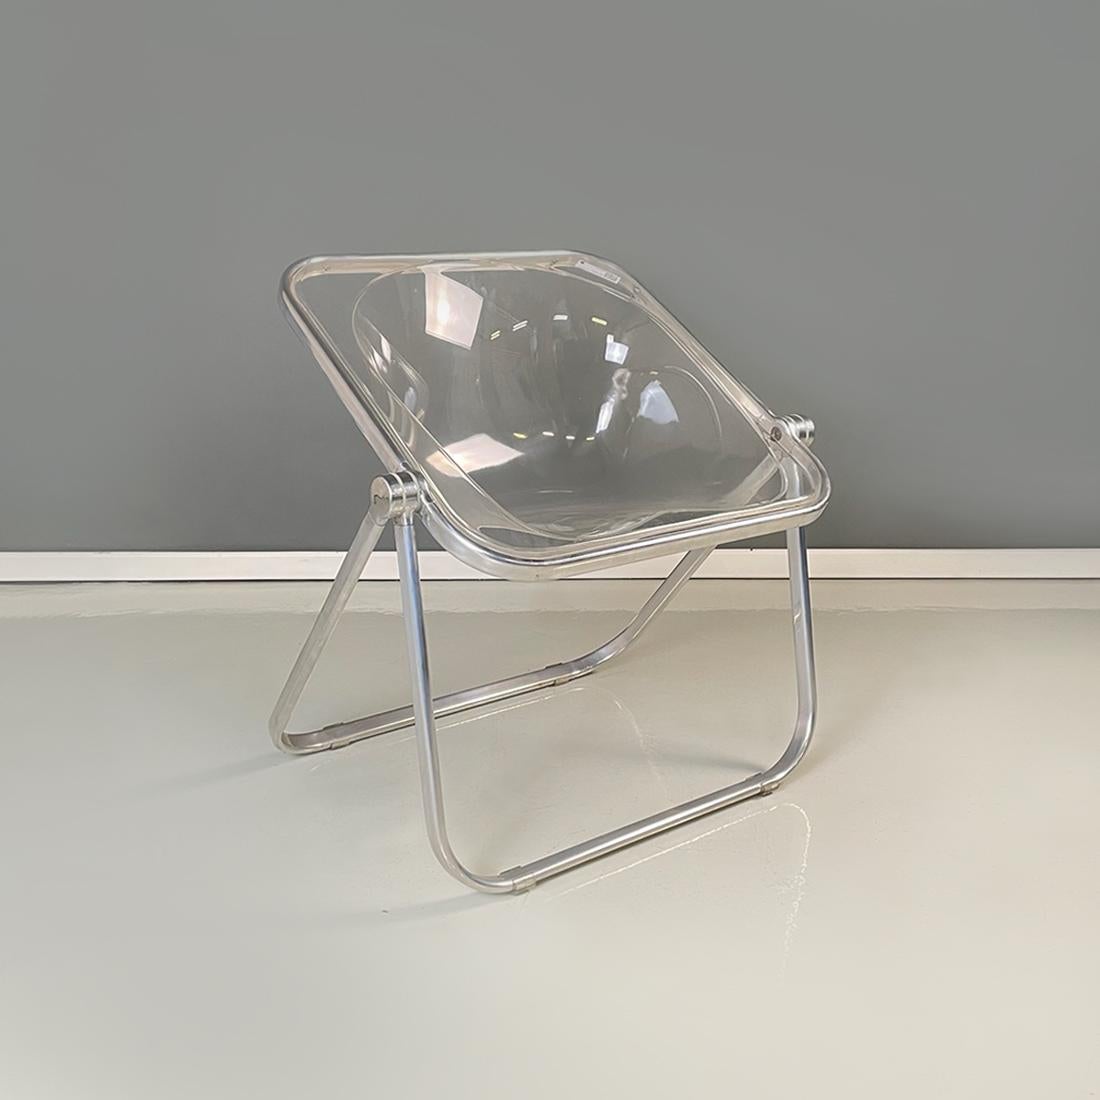 Zwei moderne italienische Sessel Plona aus transparentem Kunststoff und Aluminium von Giancarlo Piretti für Anonima Castelli, 1969.
Paar Sessel des Modells Plona mit Struktur aus Aluminiumrohr und Sitz und Rückenlehne aus transparentem Kunststoff